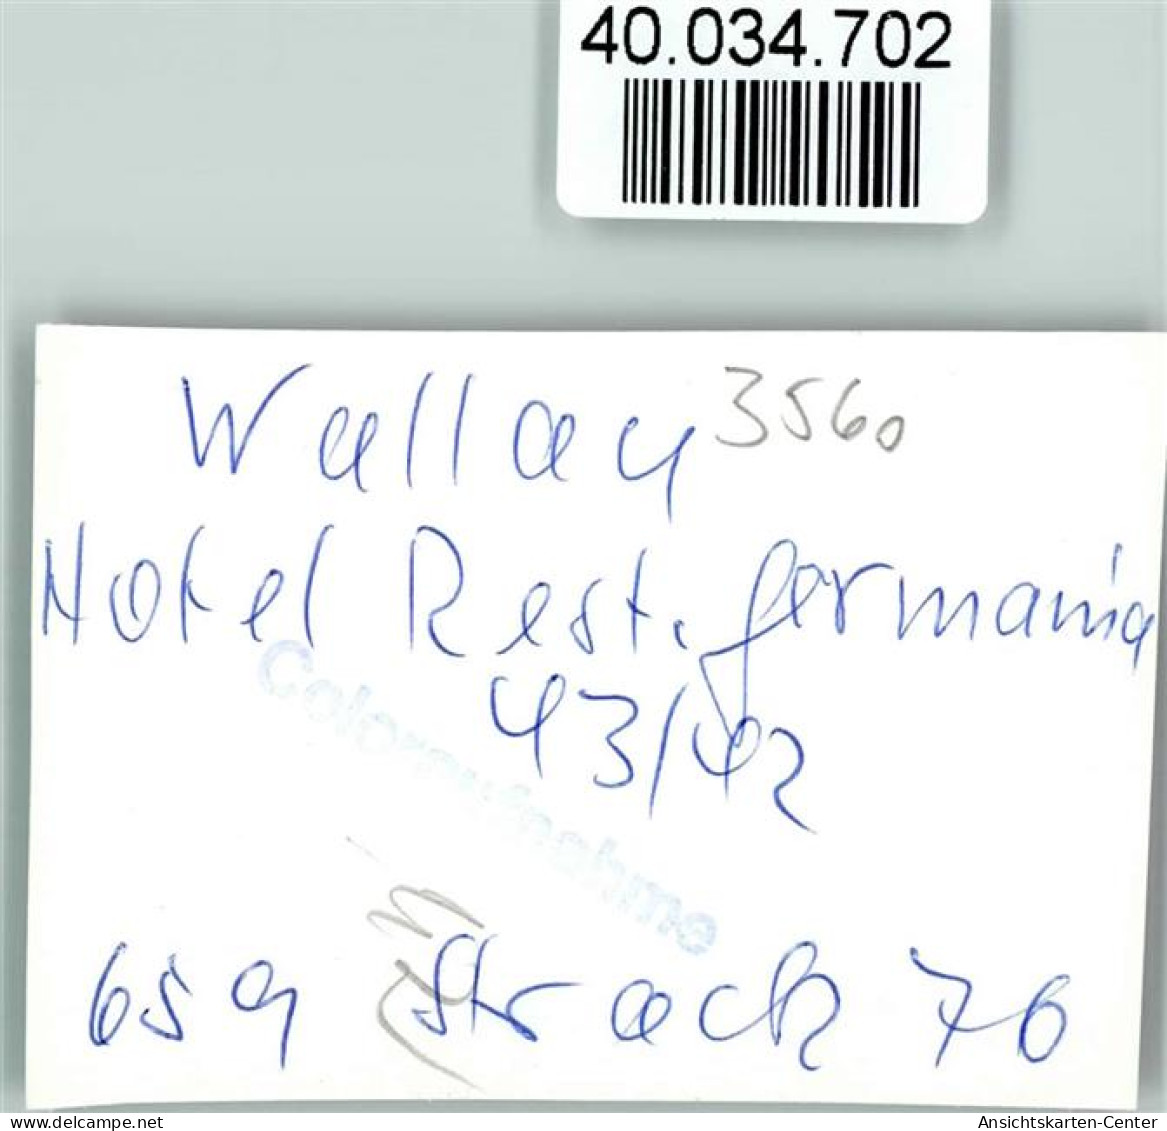 40034702 - Wallau , Lahn - Biedenkopf